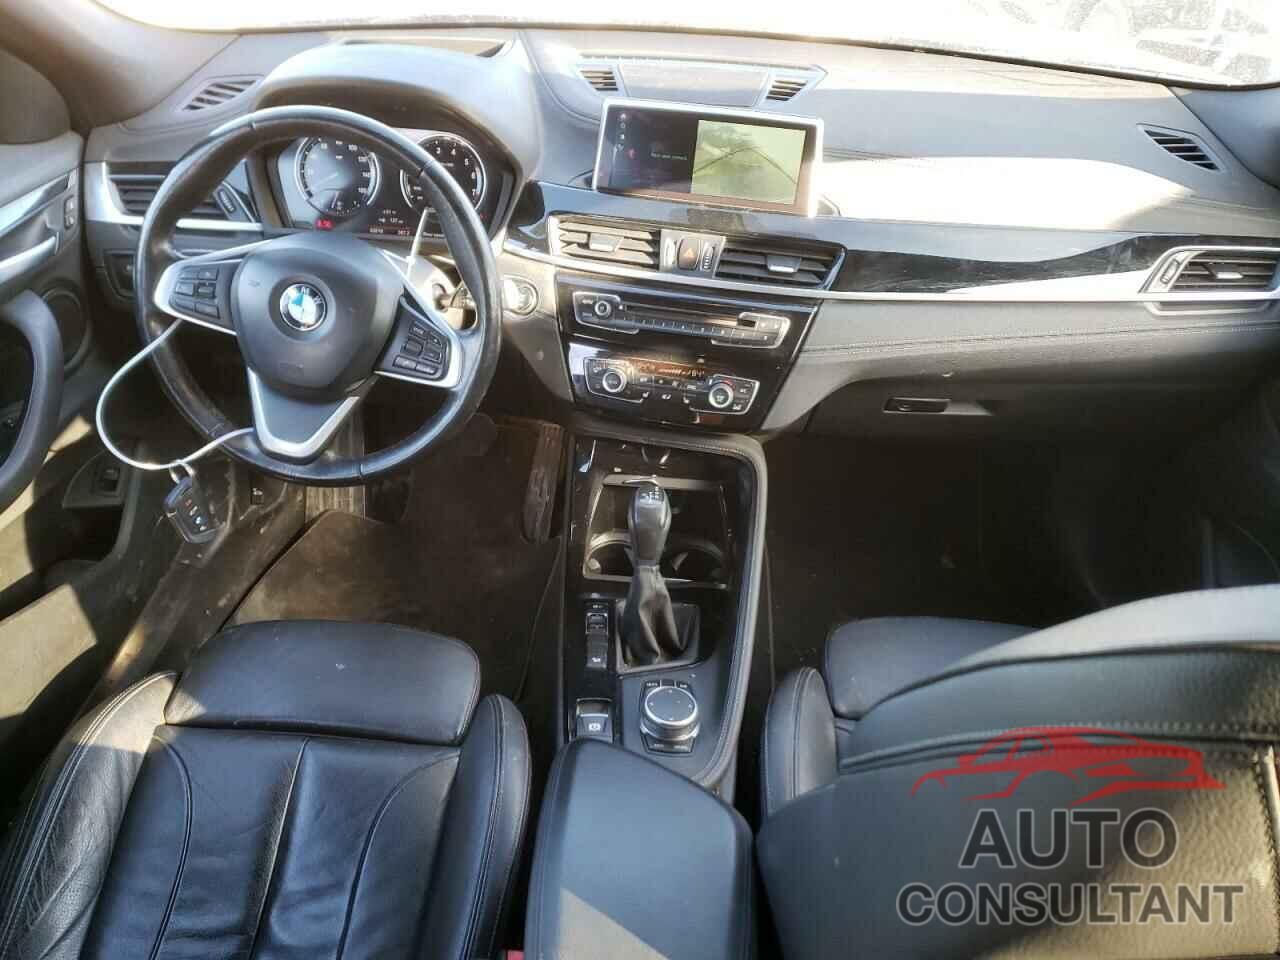 BMW X2 2018 - WBXYJ5C3XJEF76918